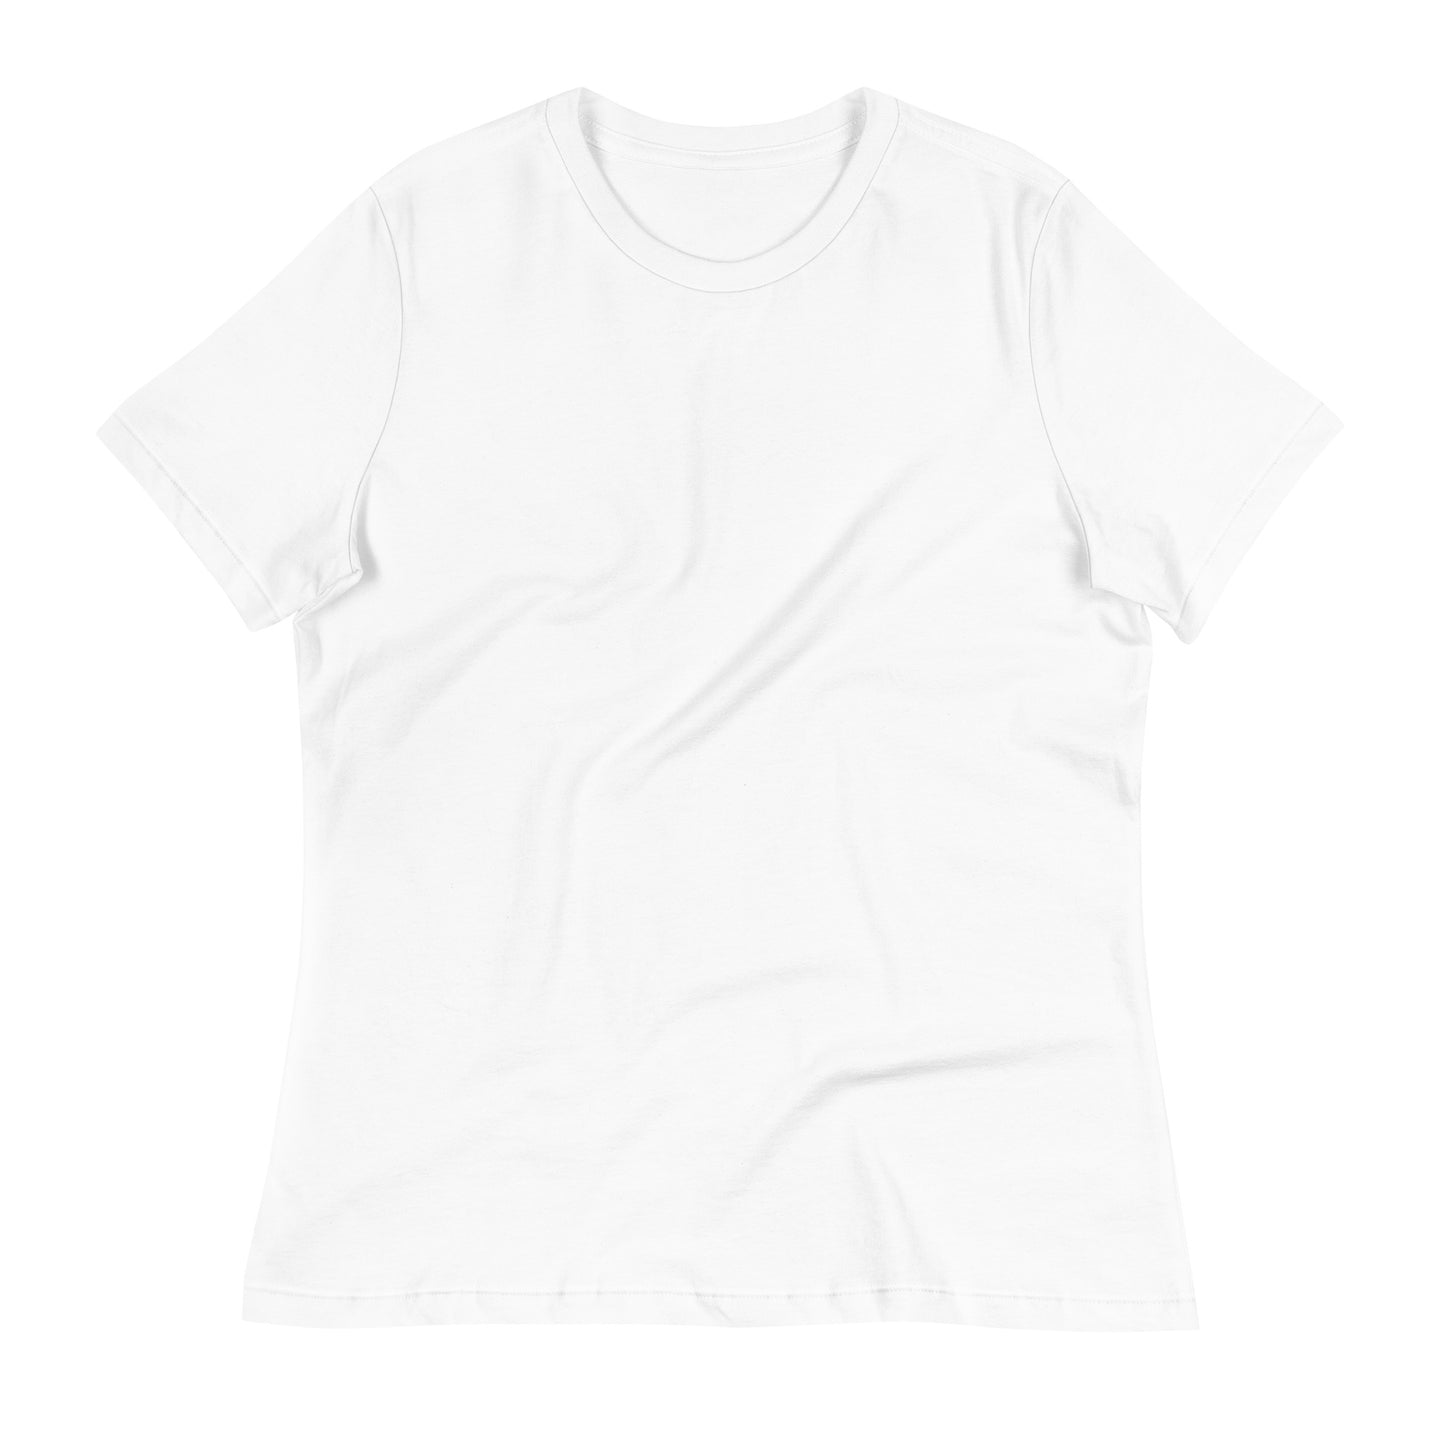 Newaygo Women's Relaxed T-Shirt